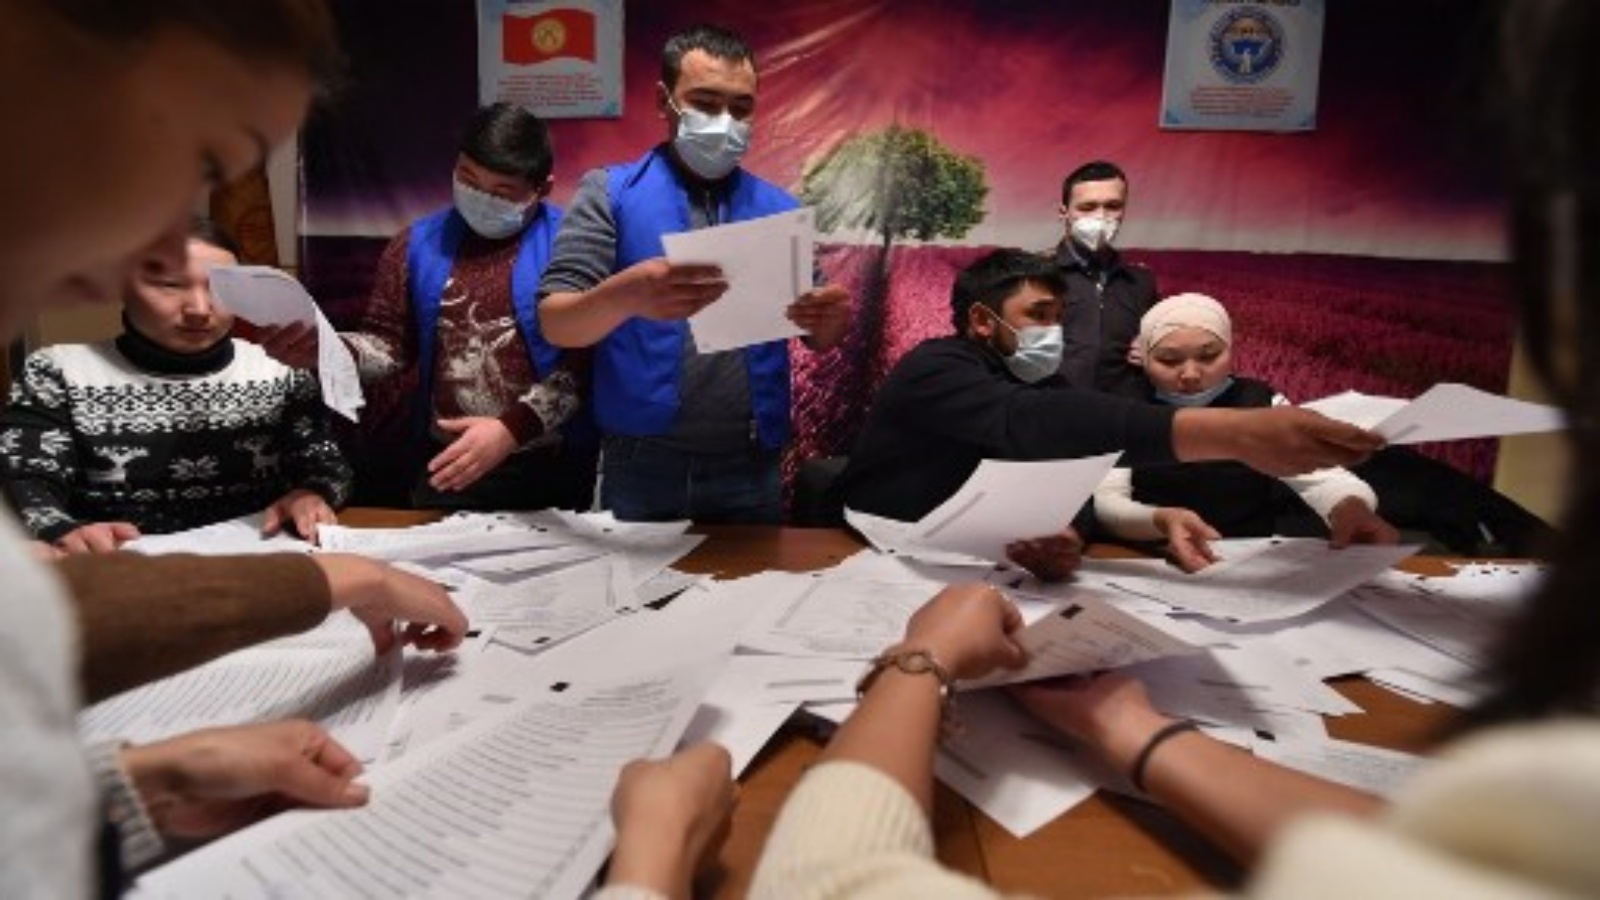 أعضاء لجنة انتخابية محلية يفرزون الأصوات في الانتخابات الرئاسية القرغيزية والاستفتاء على نظام الحكم في قرية أراشان خارج بيشكيك في 10 يناير 2021